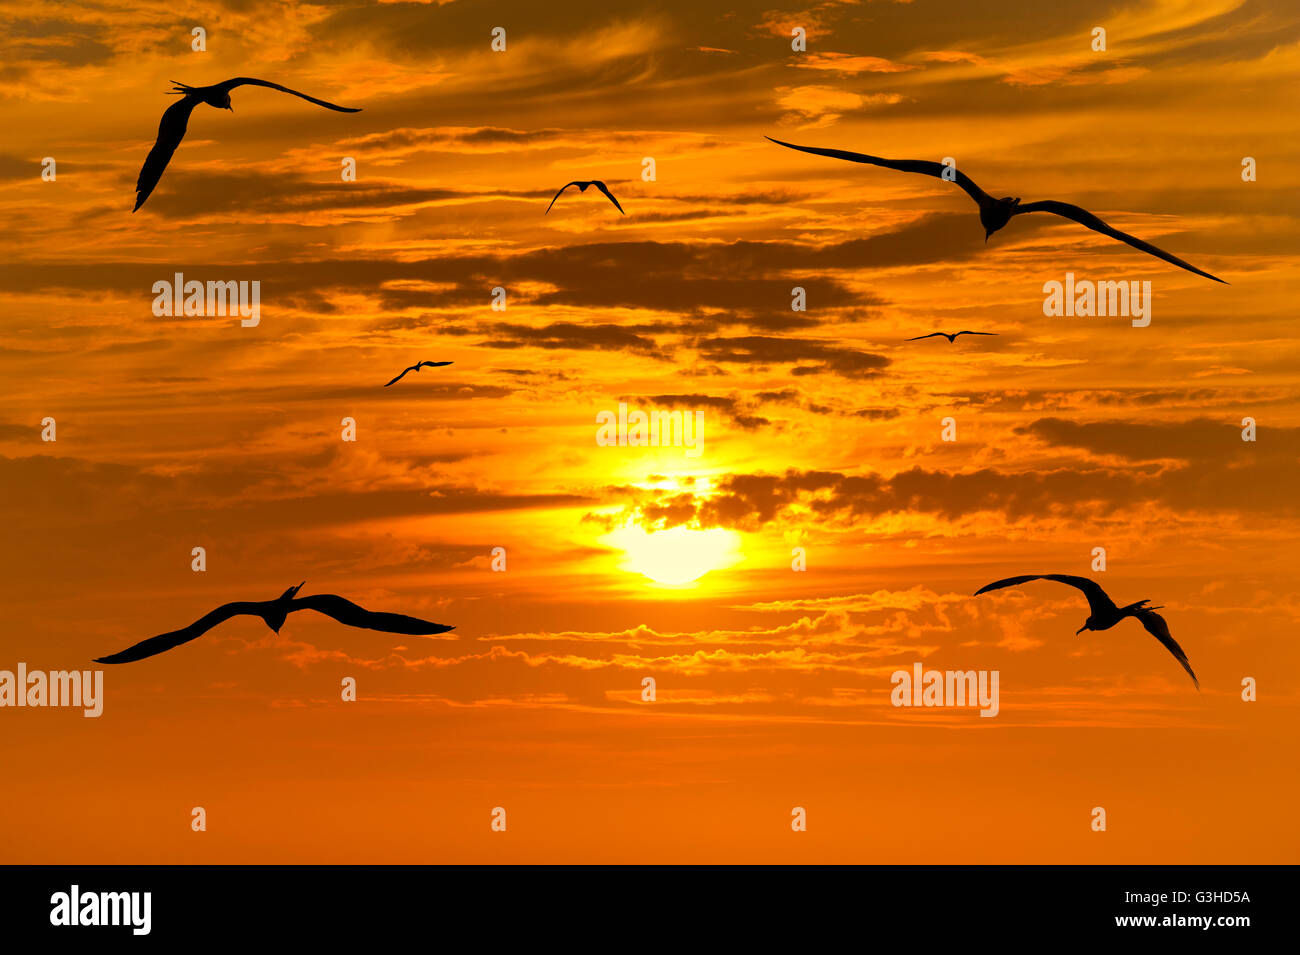 Silhouettes oiseaux migrations est un groupe d'oiseaux volant découpé avec un beau coucher de soleil jaune et orange éclatant en transmission Banque D'Images